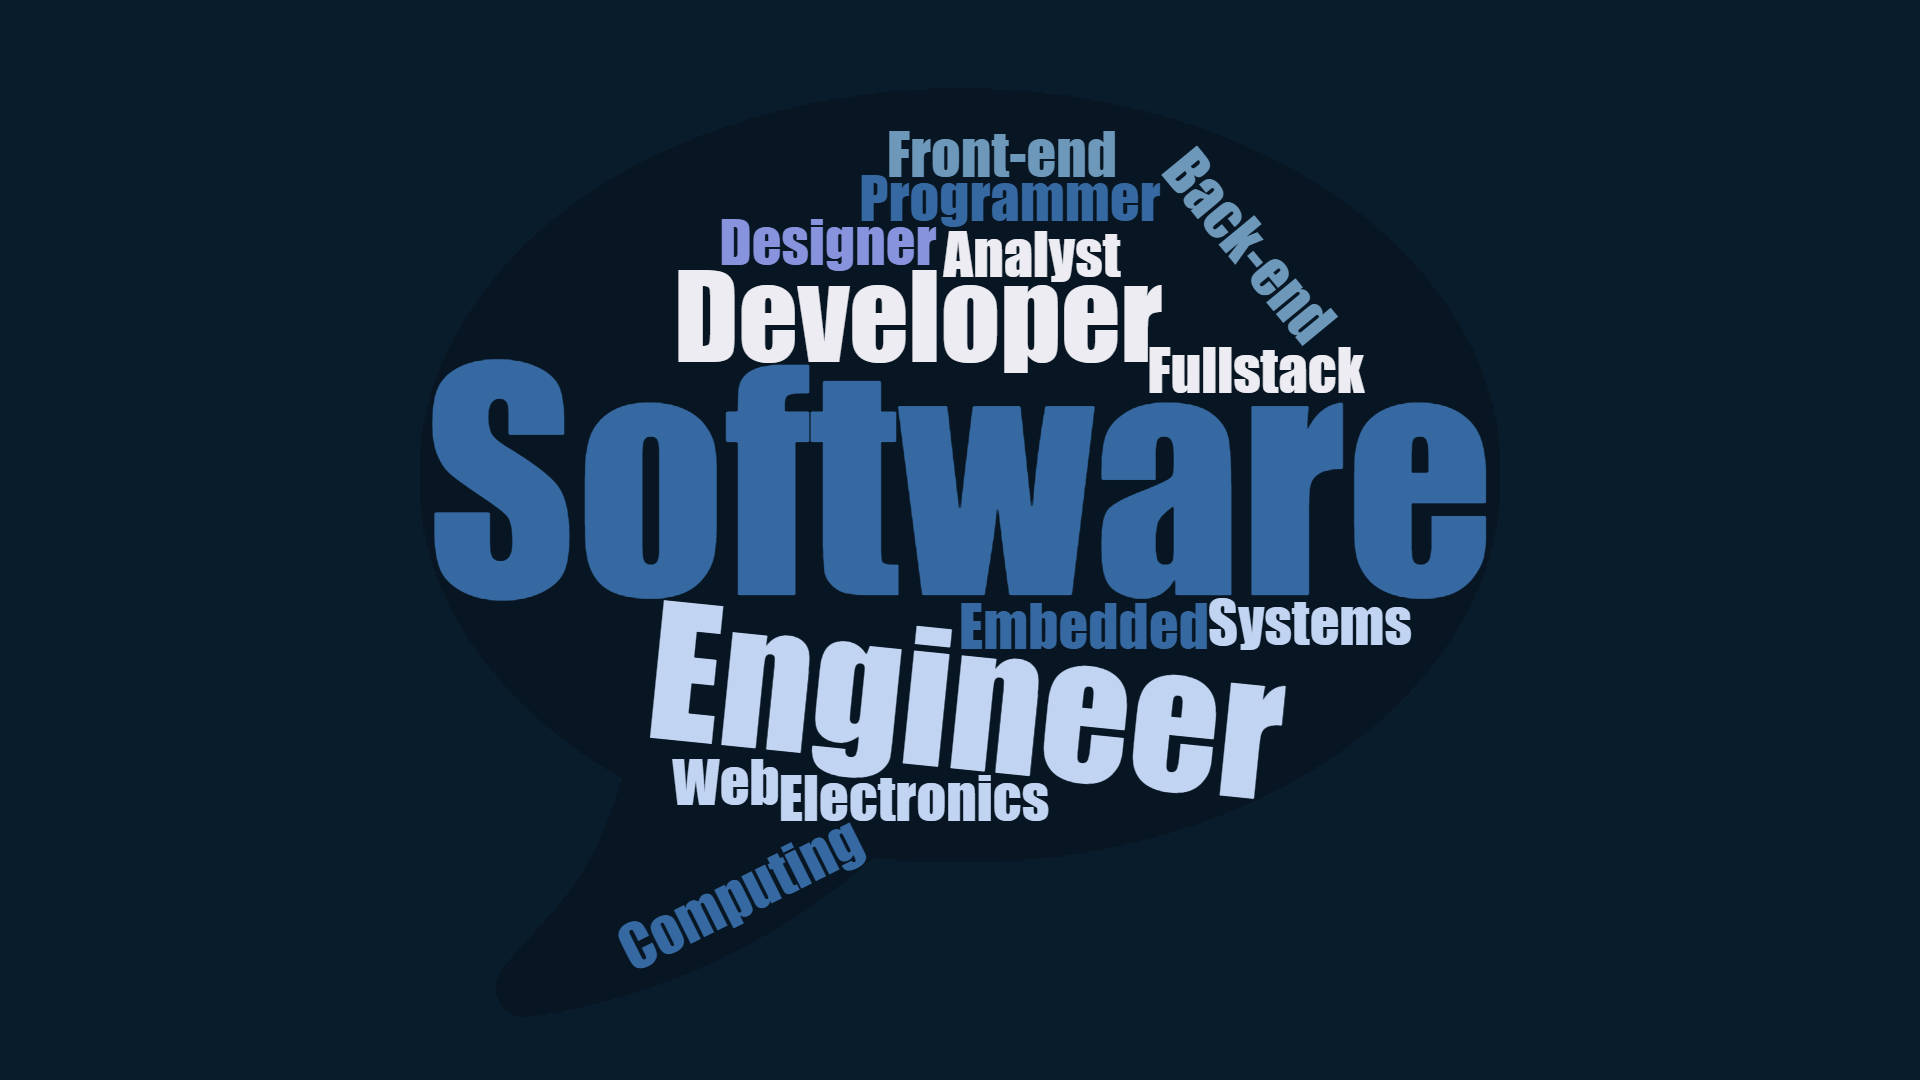 Hd Engineering Software Engineer